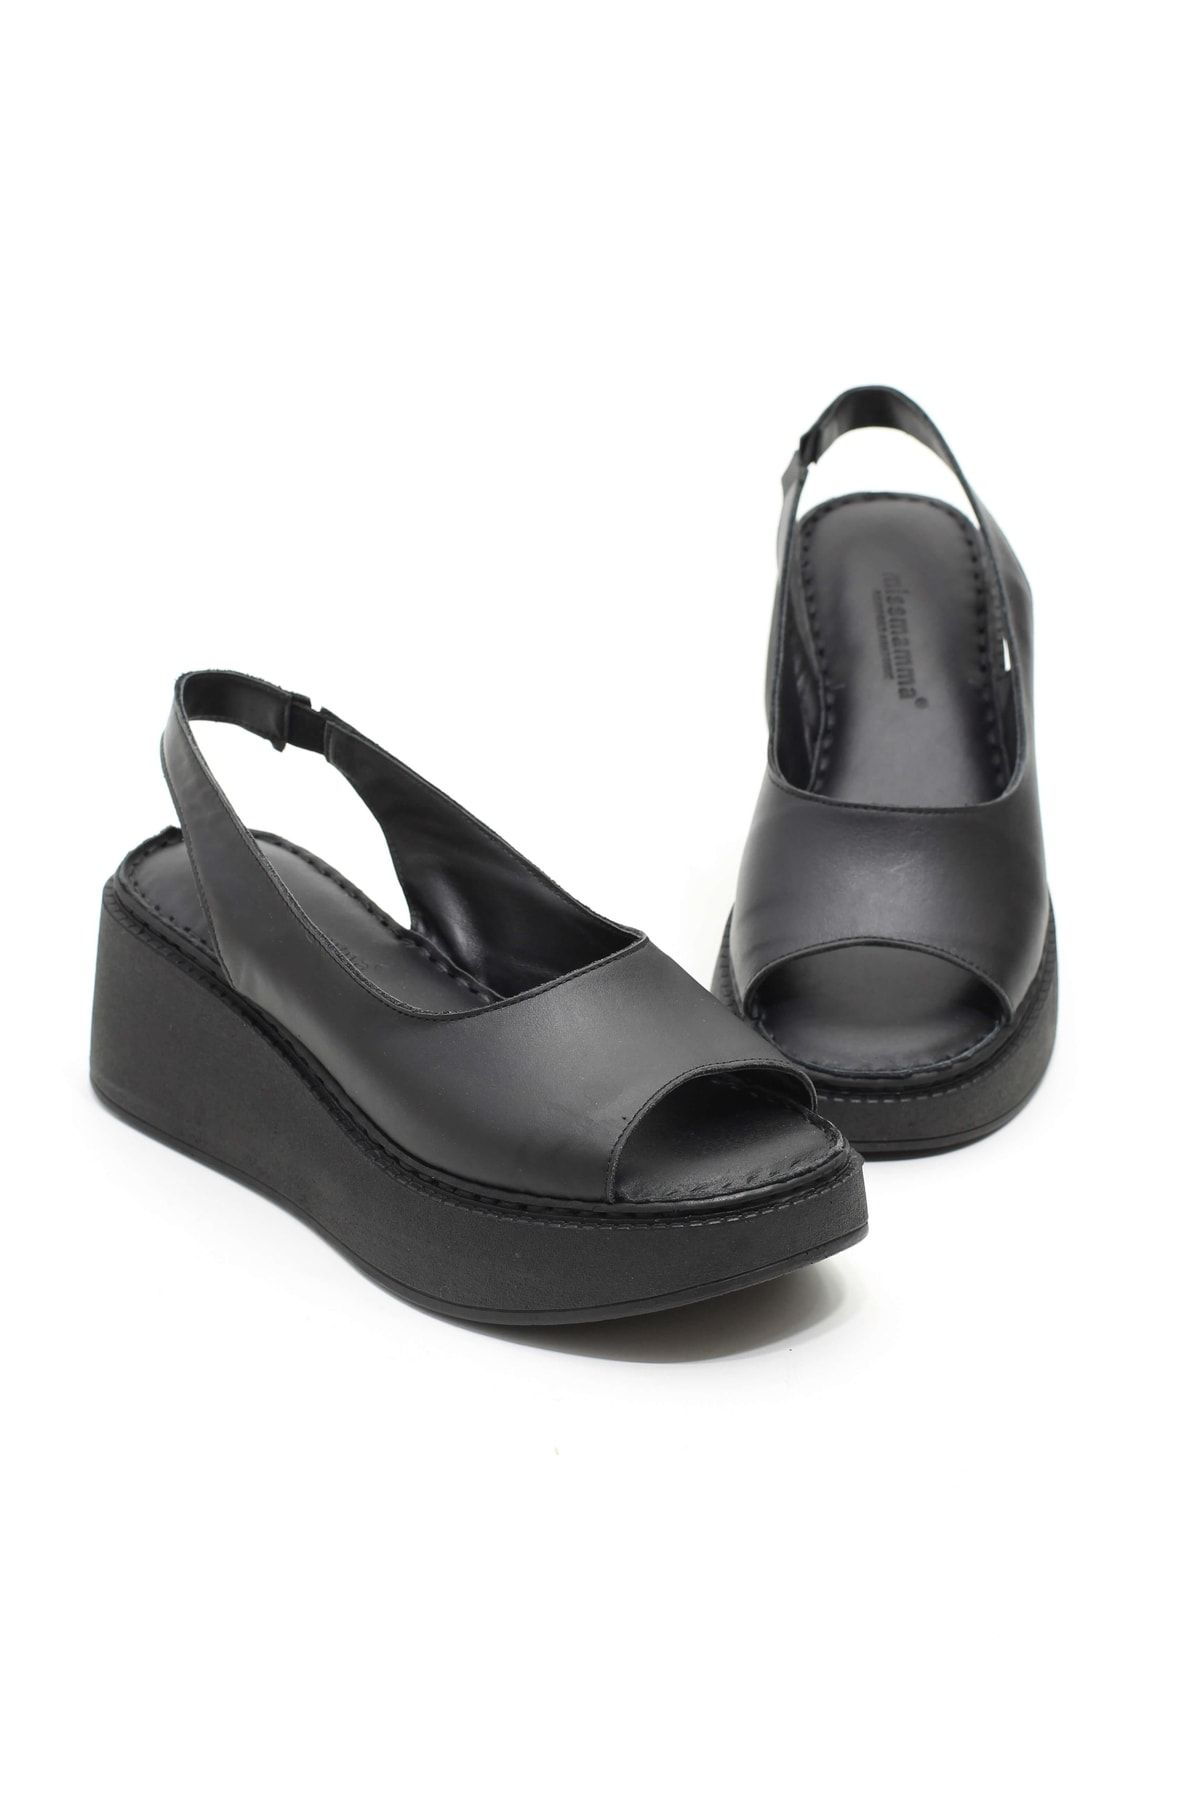 lizel Enjoy Siyah Renk Gerçek Deri Kadın Sandalet